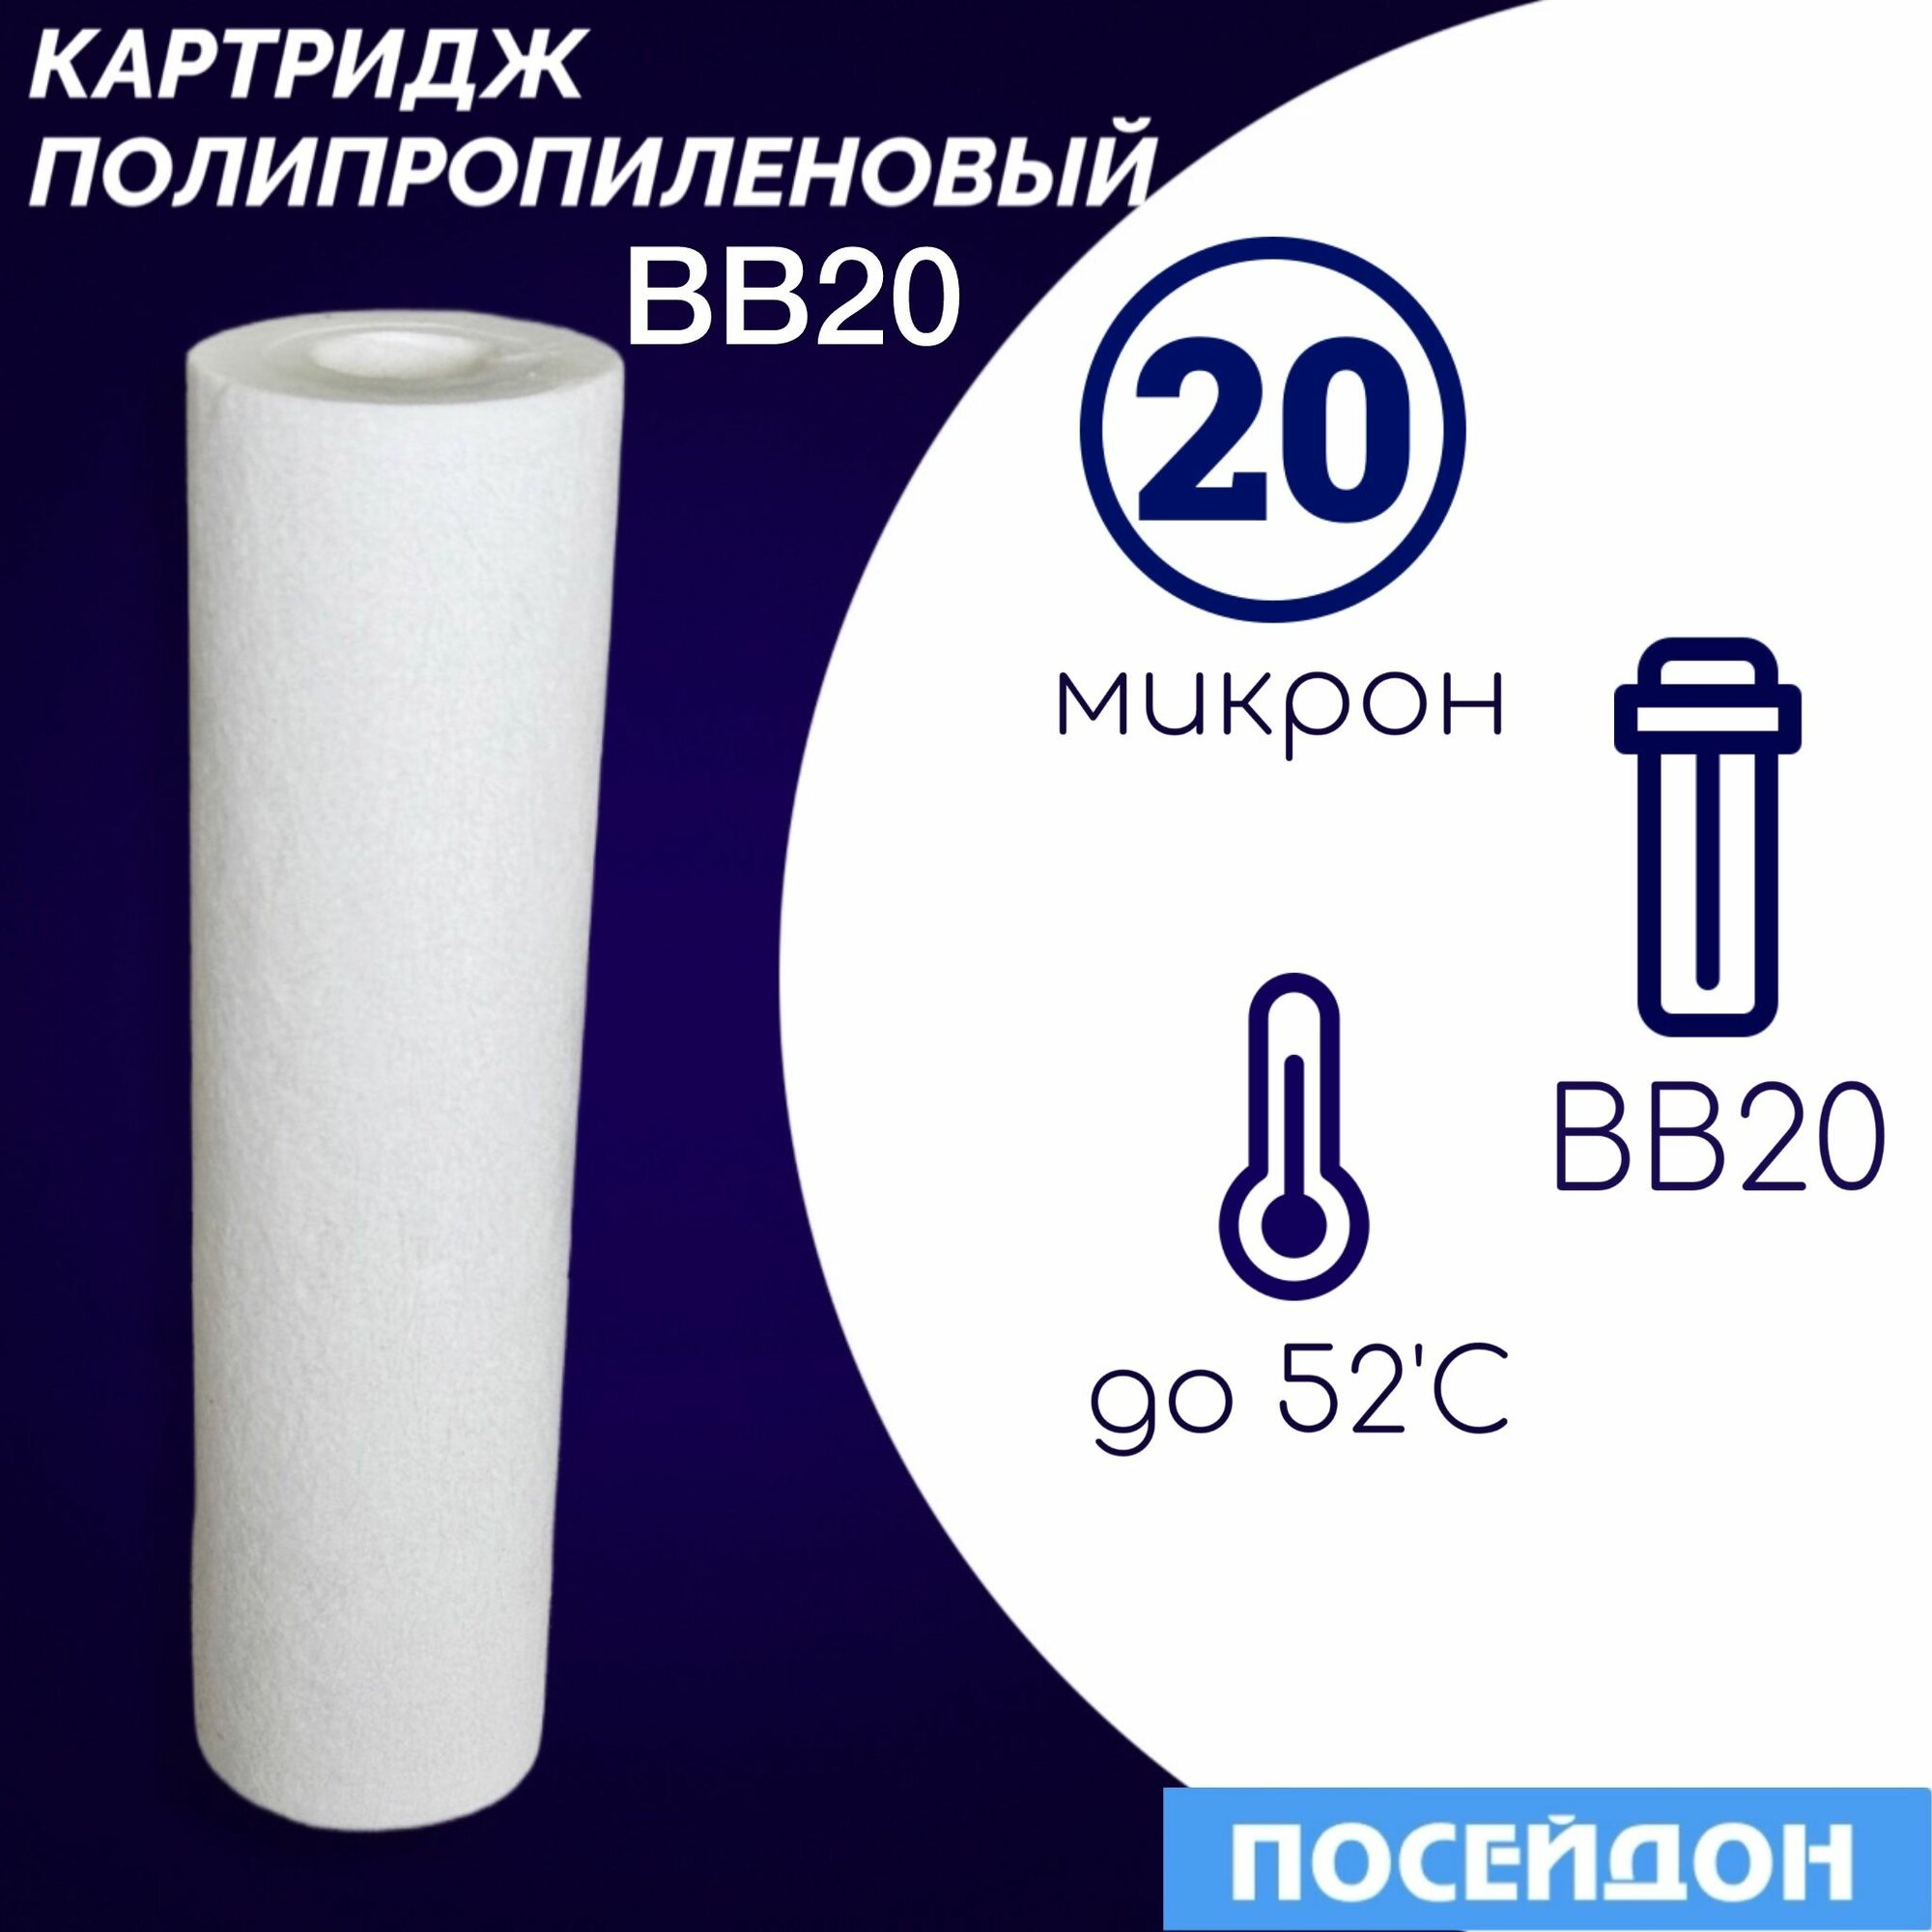 Картридж полипропиленовый ЭФГ 112/508(1шт) 20 мкм элемент фильтрующий BigBlue20. Фильтр для воды